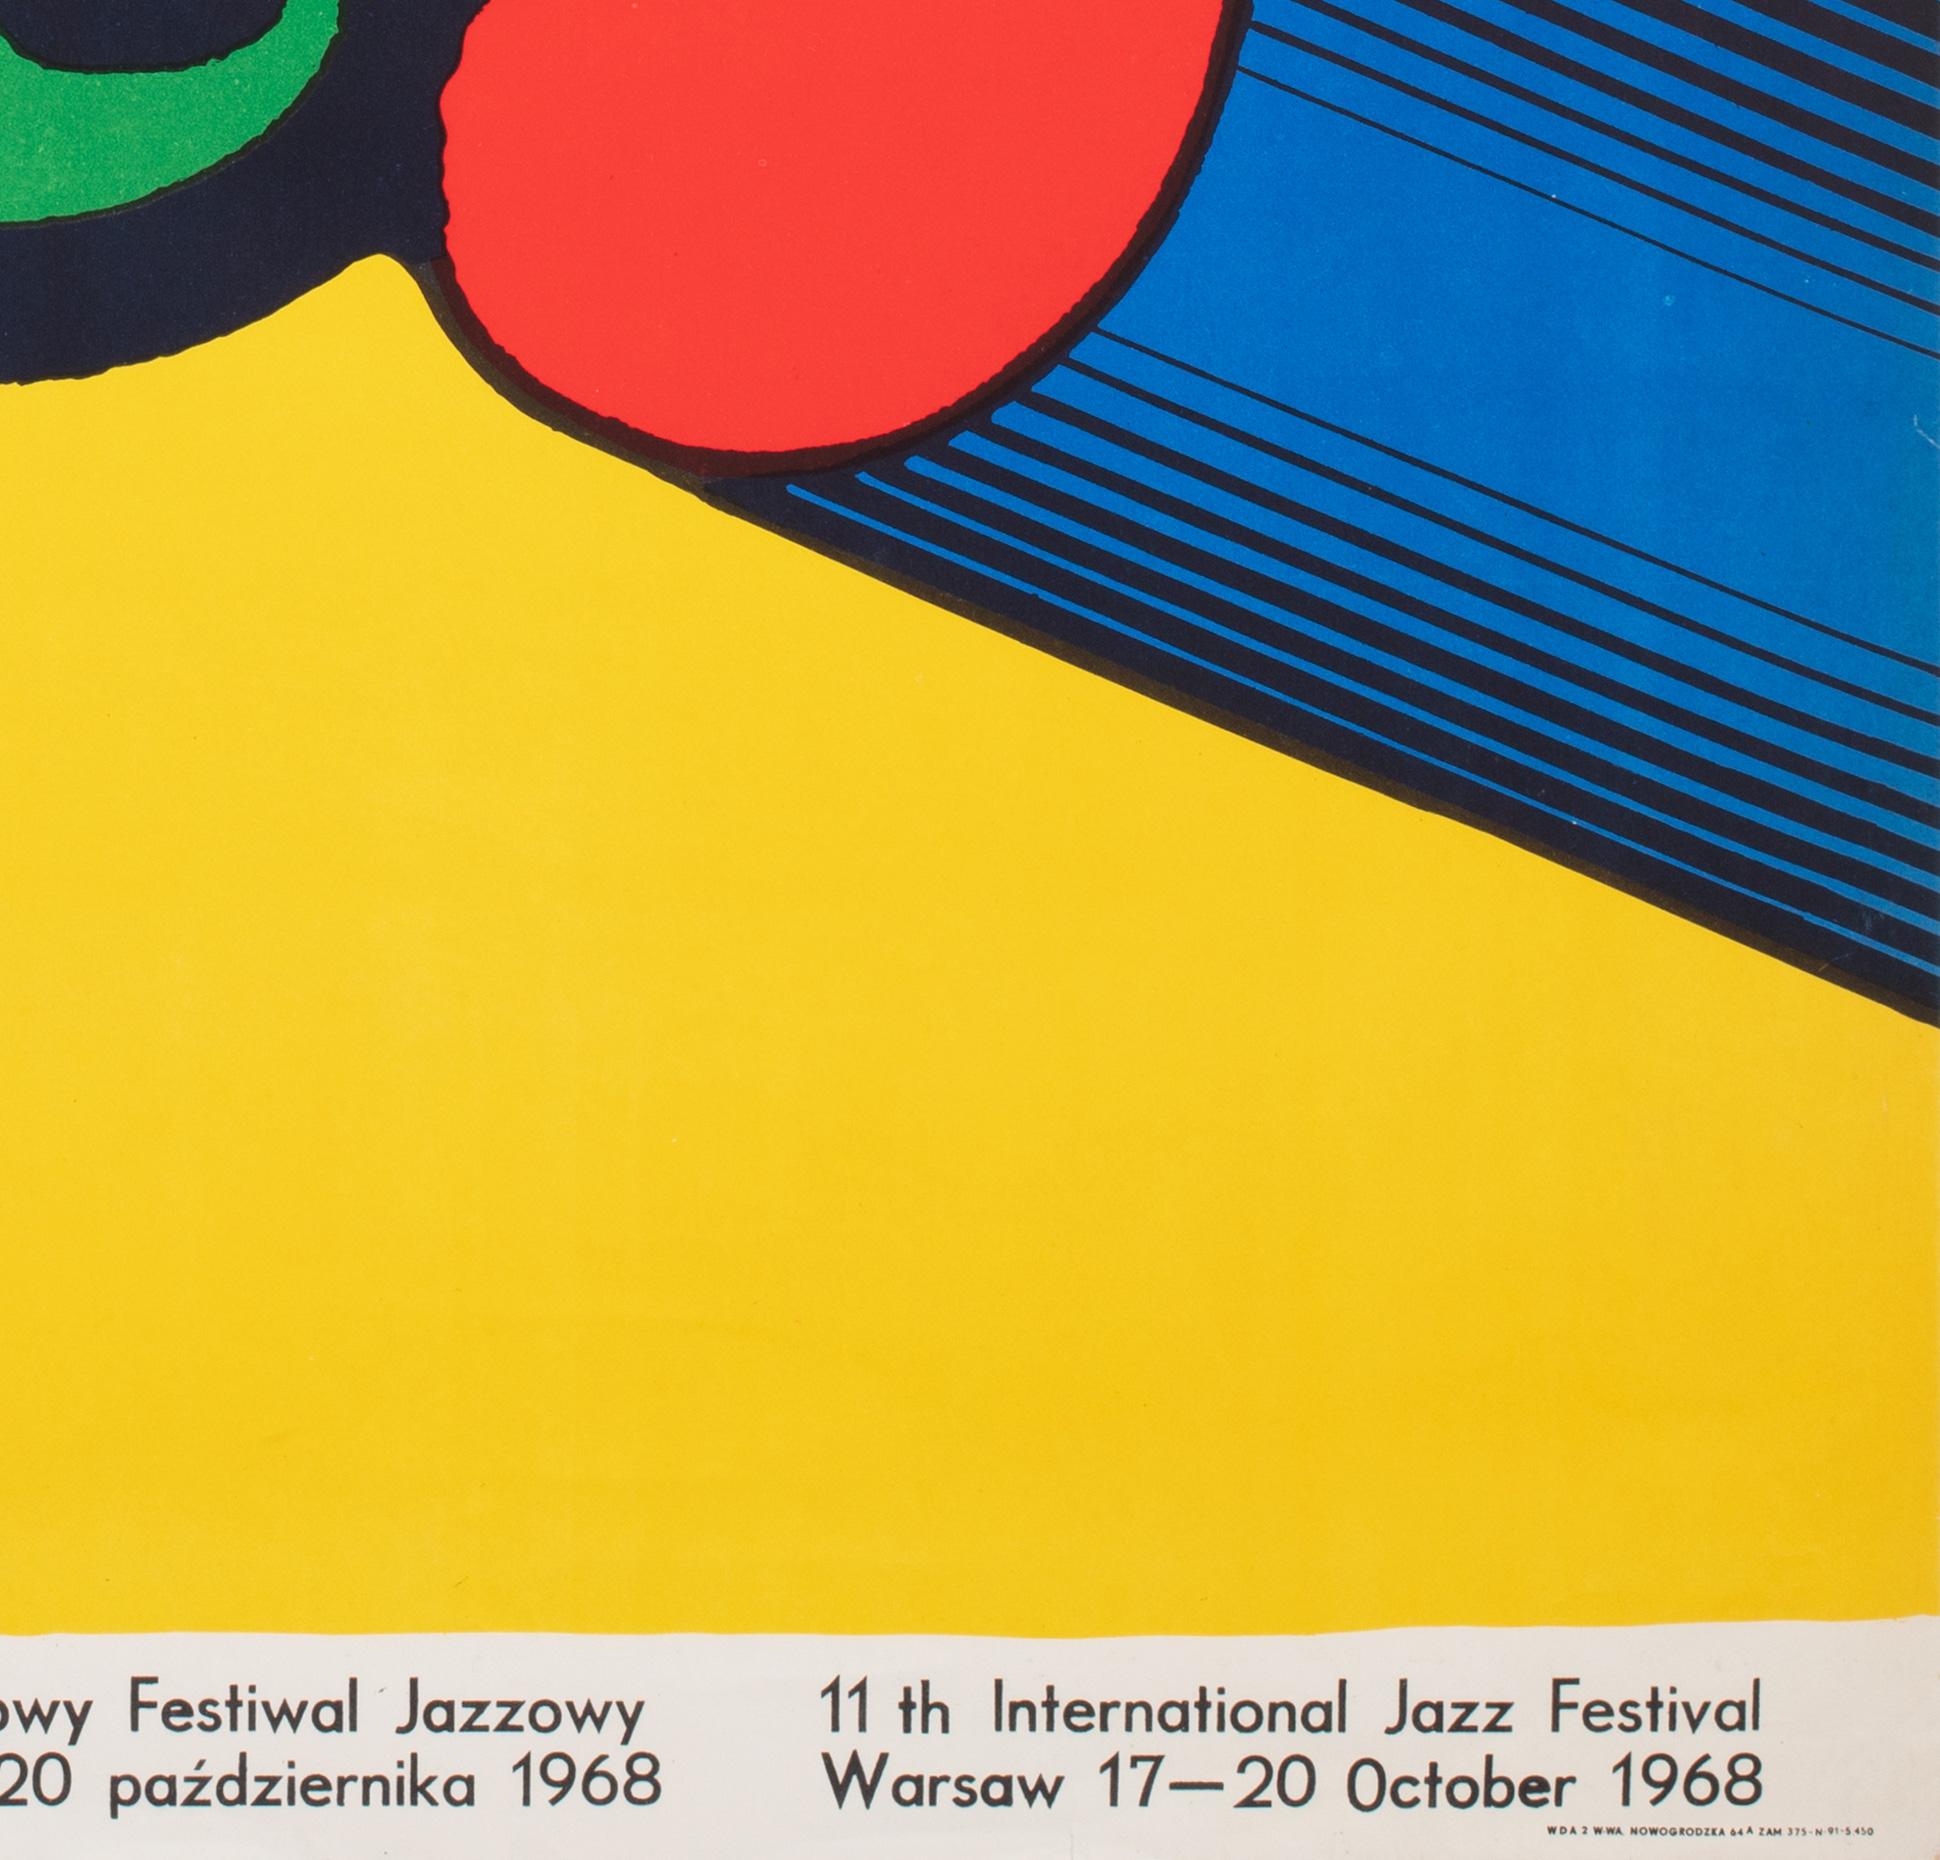 JAZZ JAMBOREE, Polish Music Festival Poster, BRONISLAW ZELEK, 1968 For Sale 3